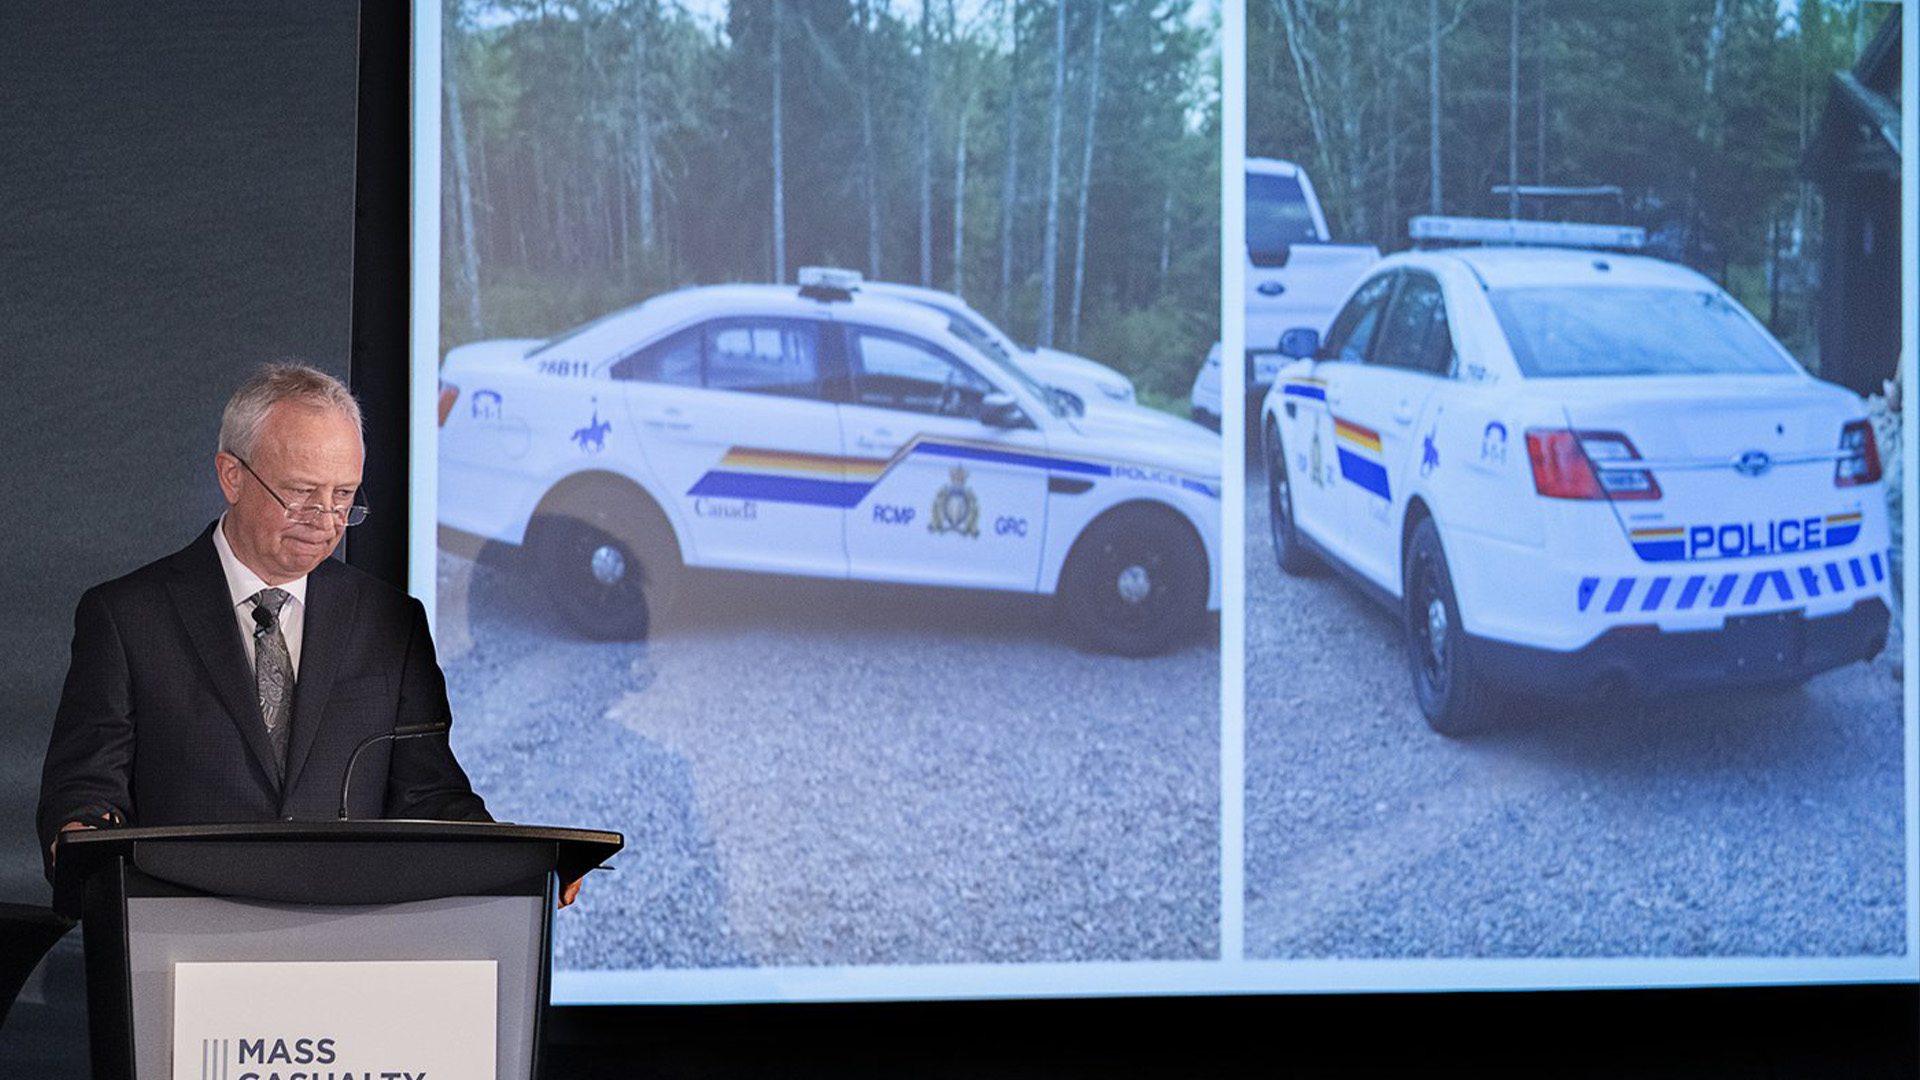 L'avocat de la Commission, Roger Burrill, présente des informations sur l'attirail de police utilisé par Gabriel Wortman, lors de l'enquête de la Mass Casualty Commission sur les meurtres de masse dans les régions rurales de la Nouvelle-Écosse les 18 et 19 avril 2020, à Halifax le lundi 25 avril 2022.